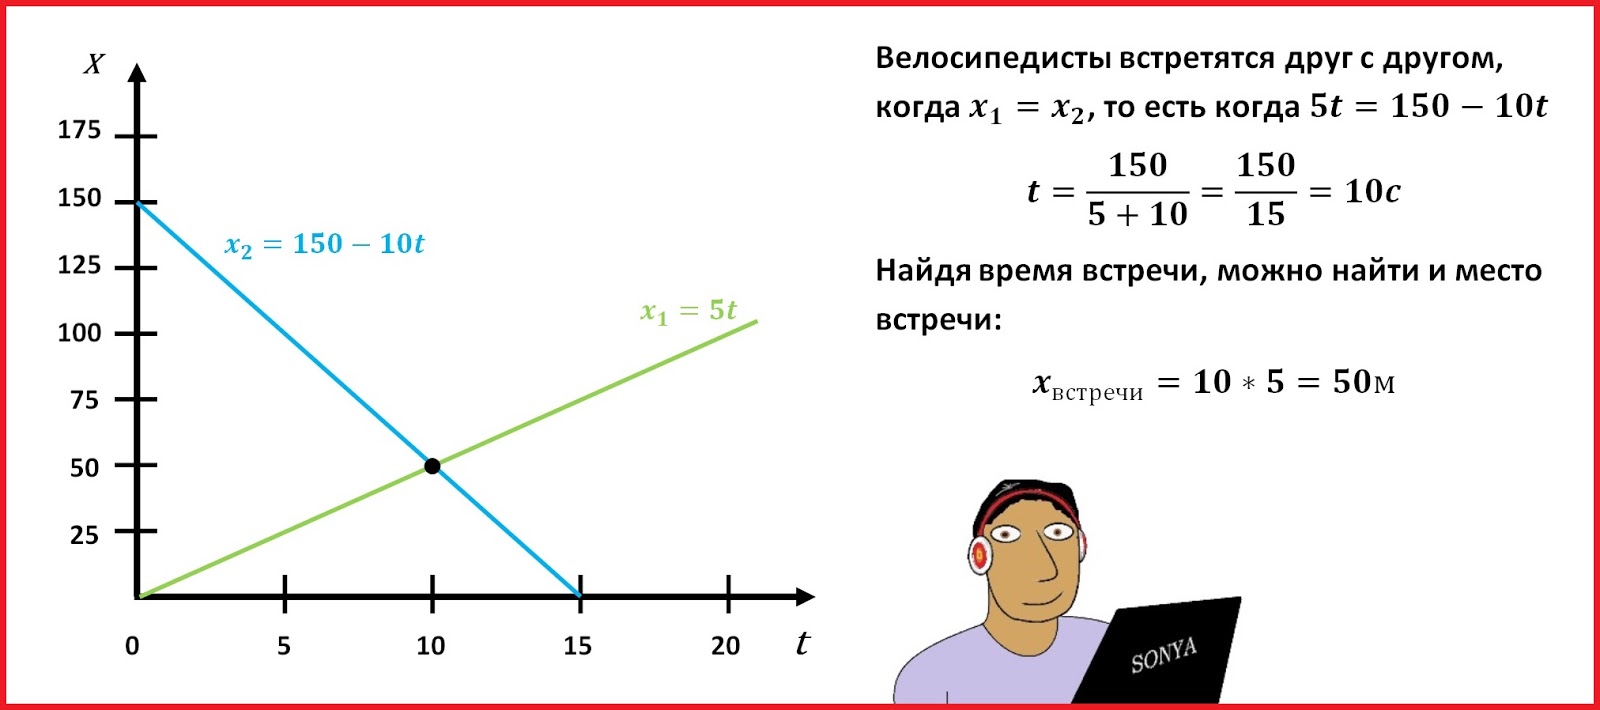 X1 3 t. X2 150-10t. График x(t). Начертить график зависимости x(t). X1 5t x2 150-10t физика.